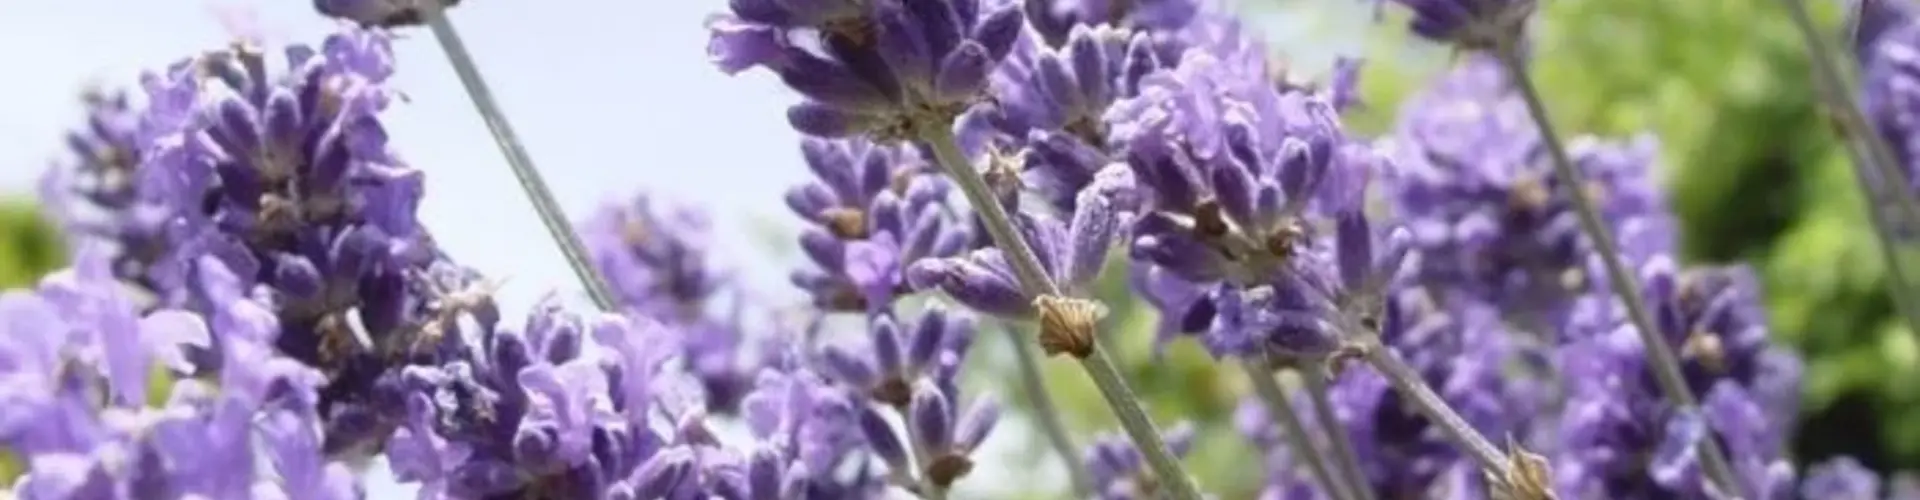 Lavendel umpflanzen: Ist das möglich?